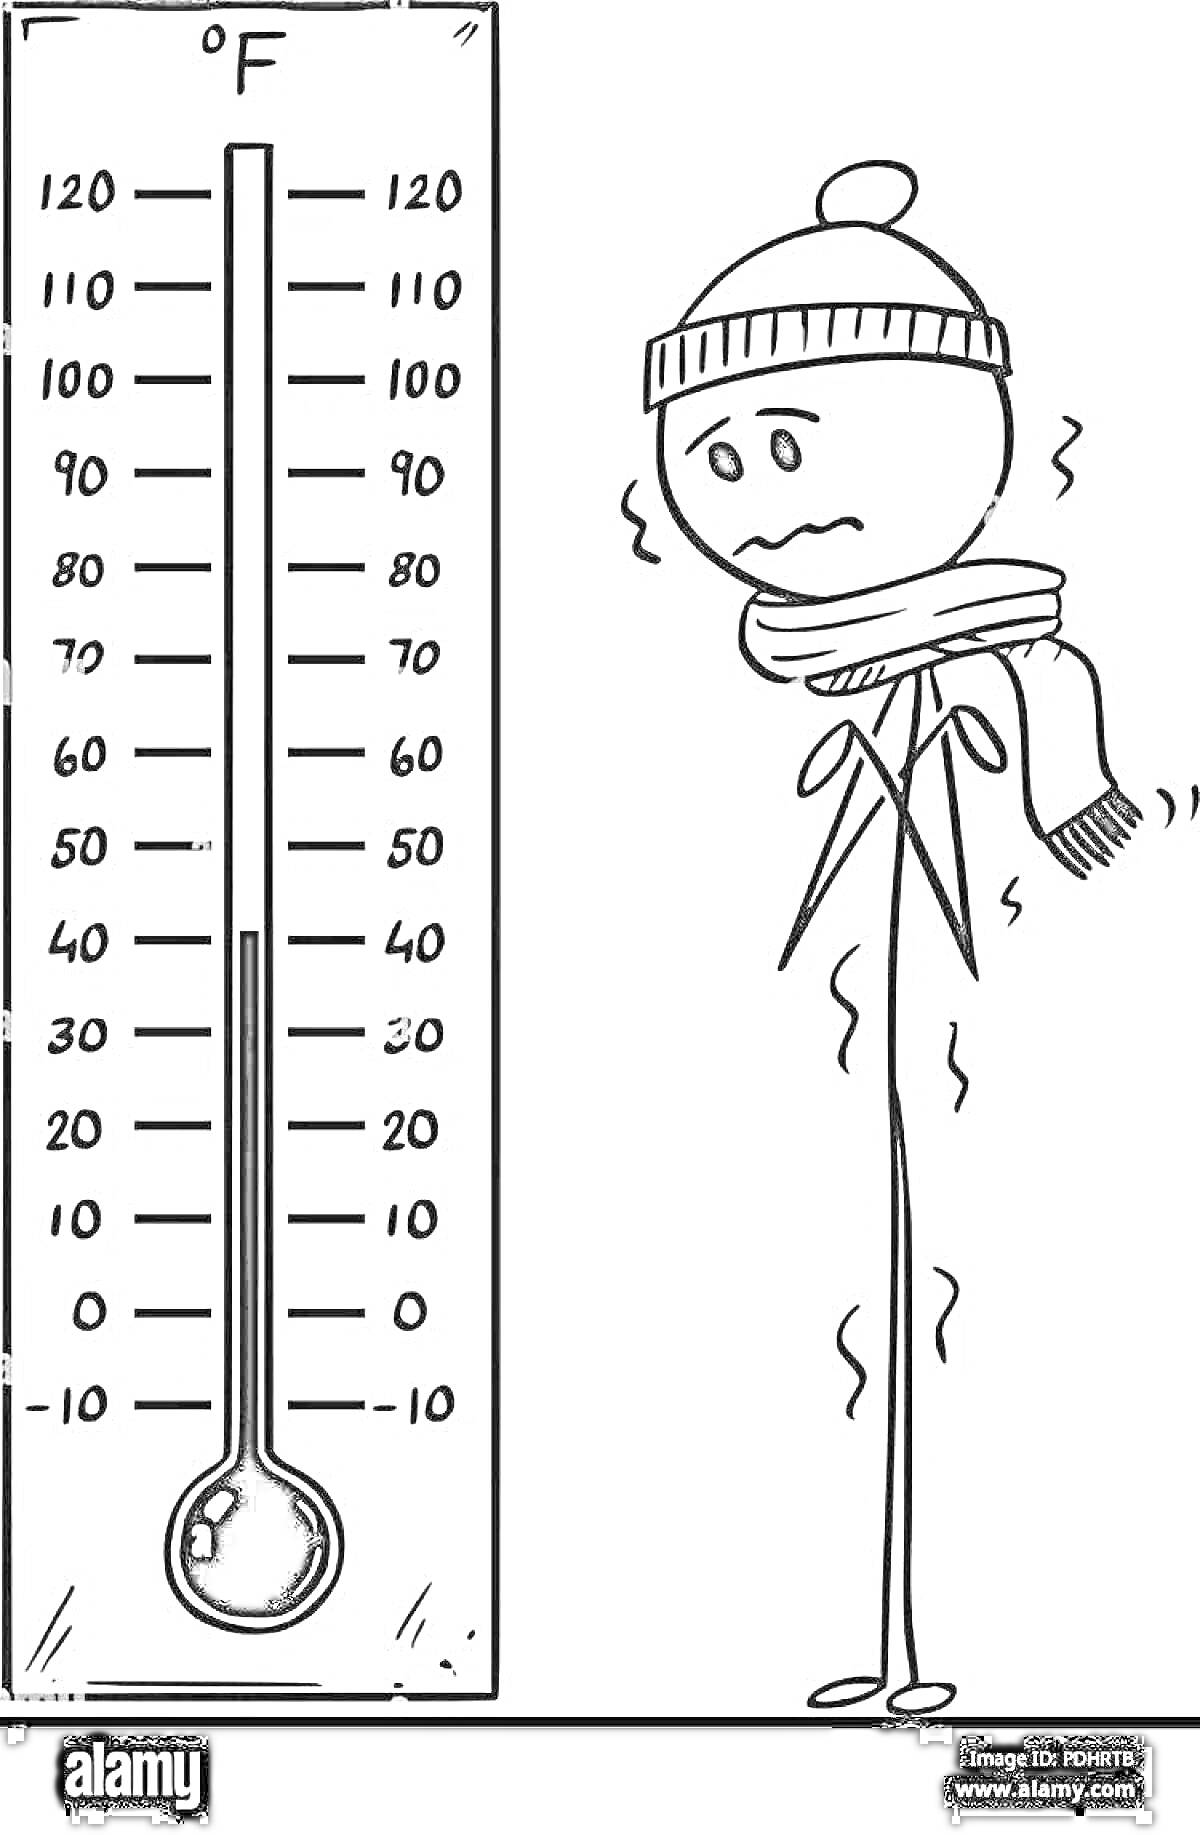 Раскраска Термометр с отметкой температуры в градусах Фаренгейта и дрожащий человек в зимней шапке и шарфе